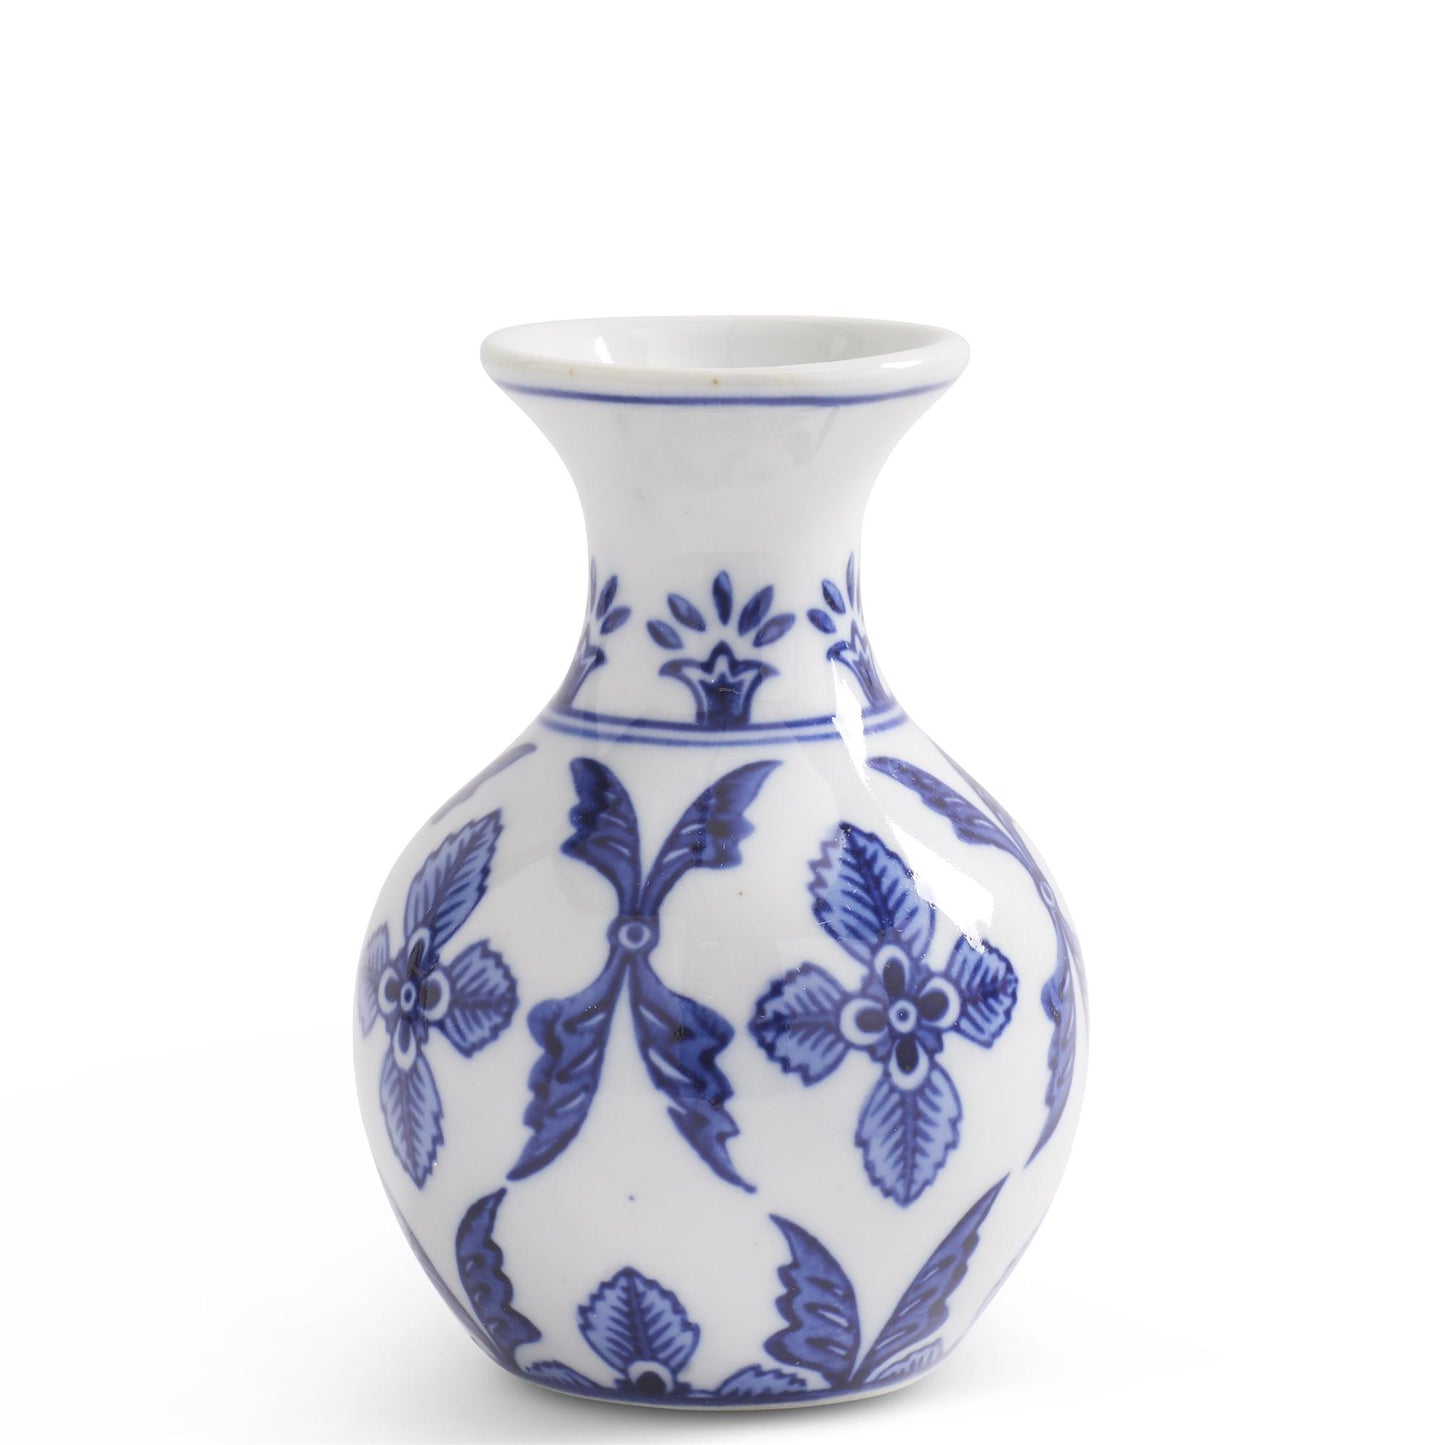 Blue & White Porcelain Bud Vases